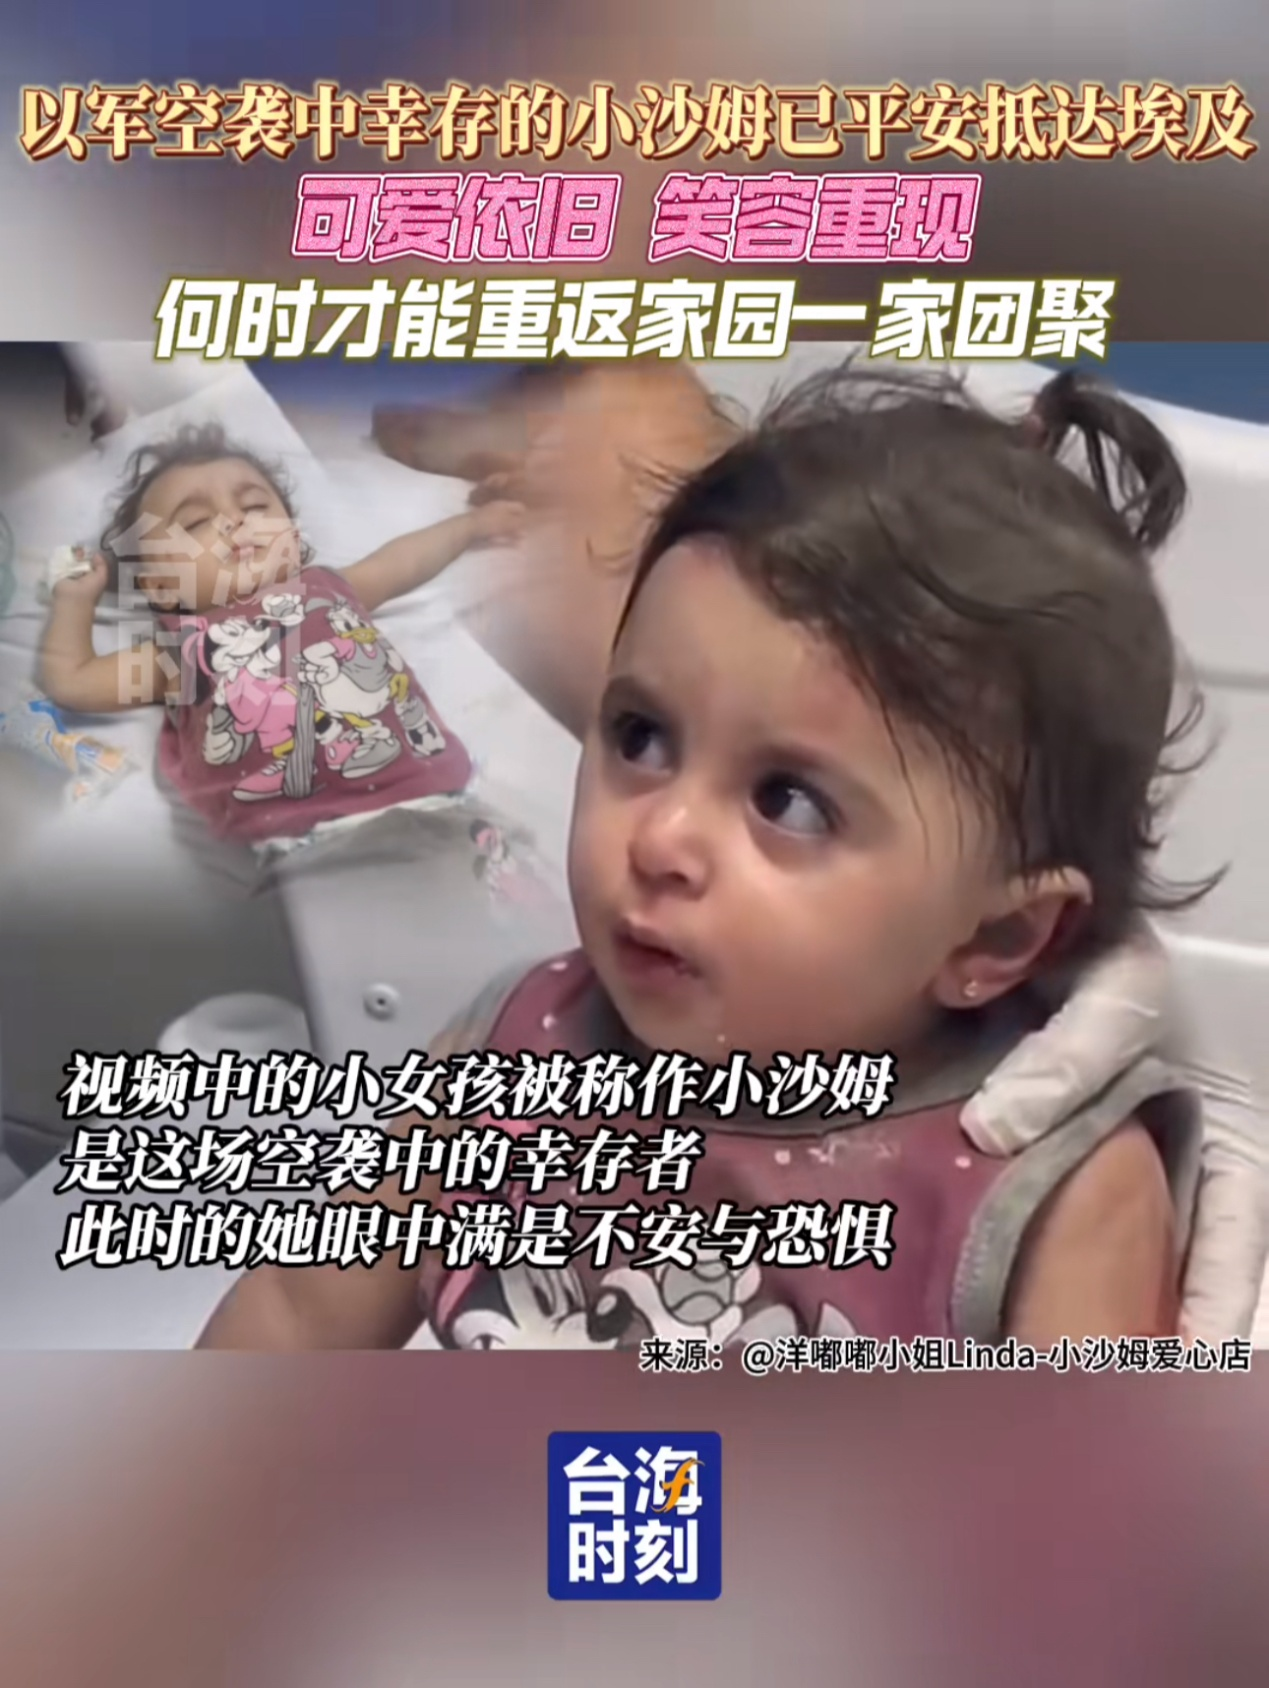 全网关注的加沙女孩小沙姆 受中国人援助平安离开加沙